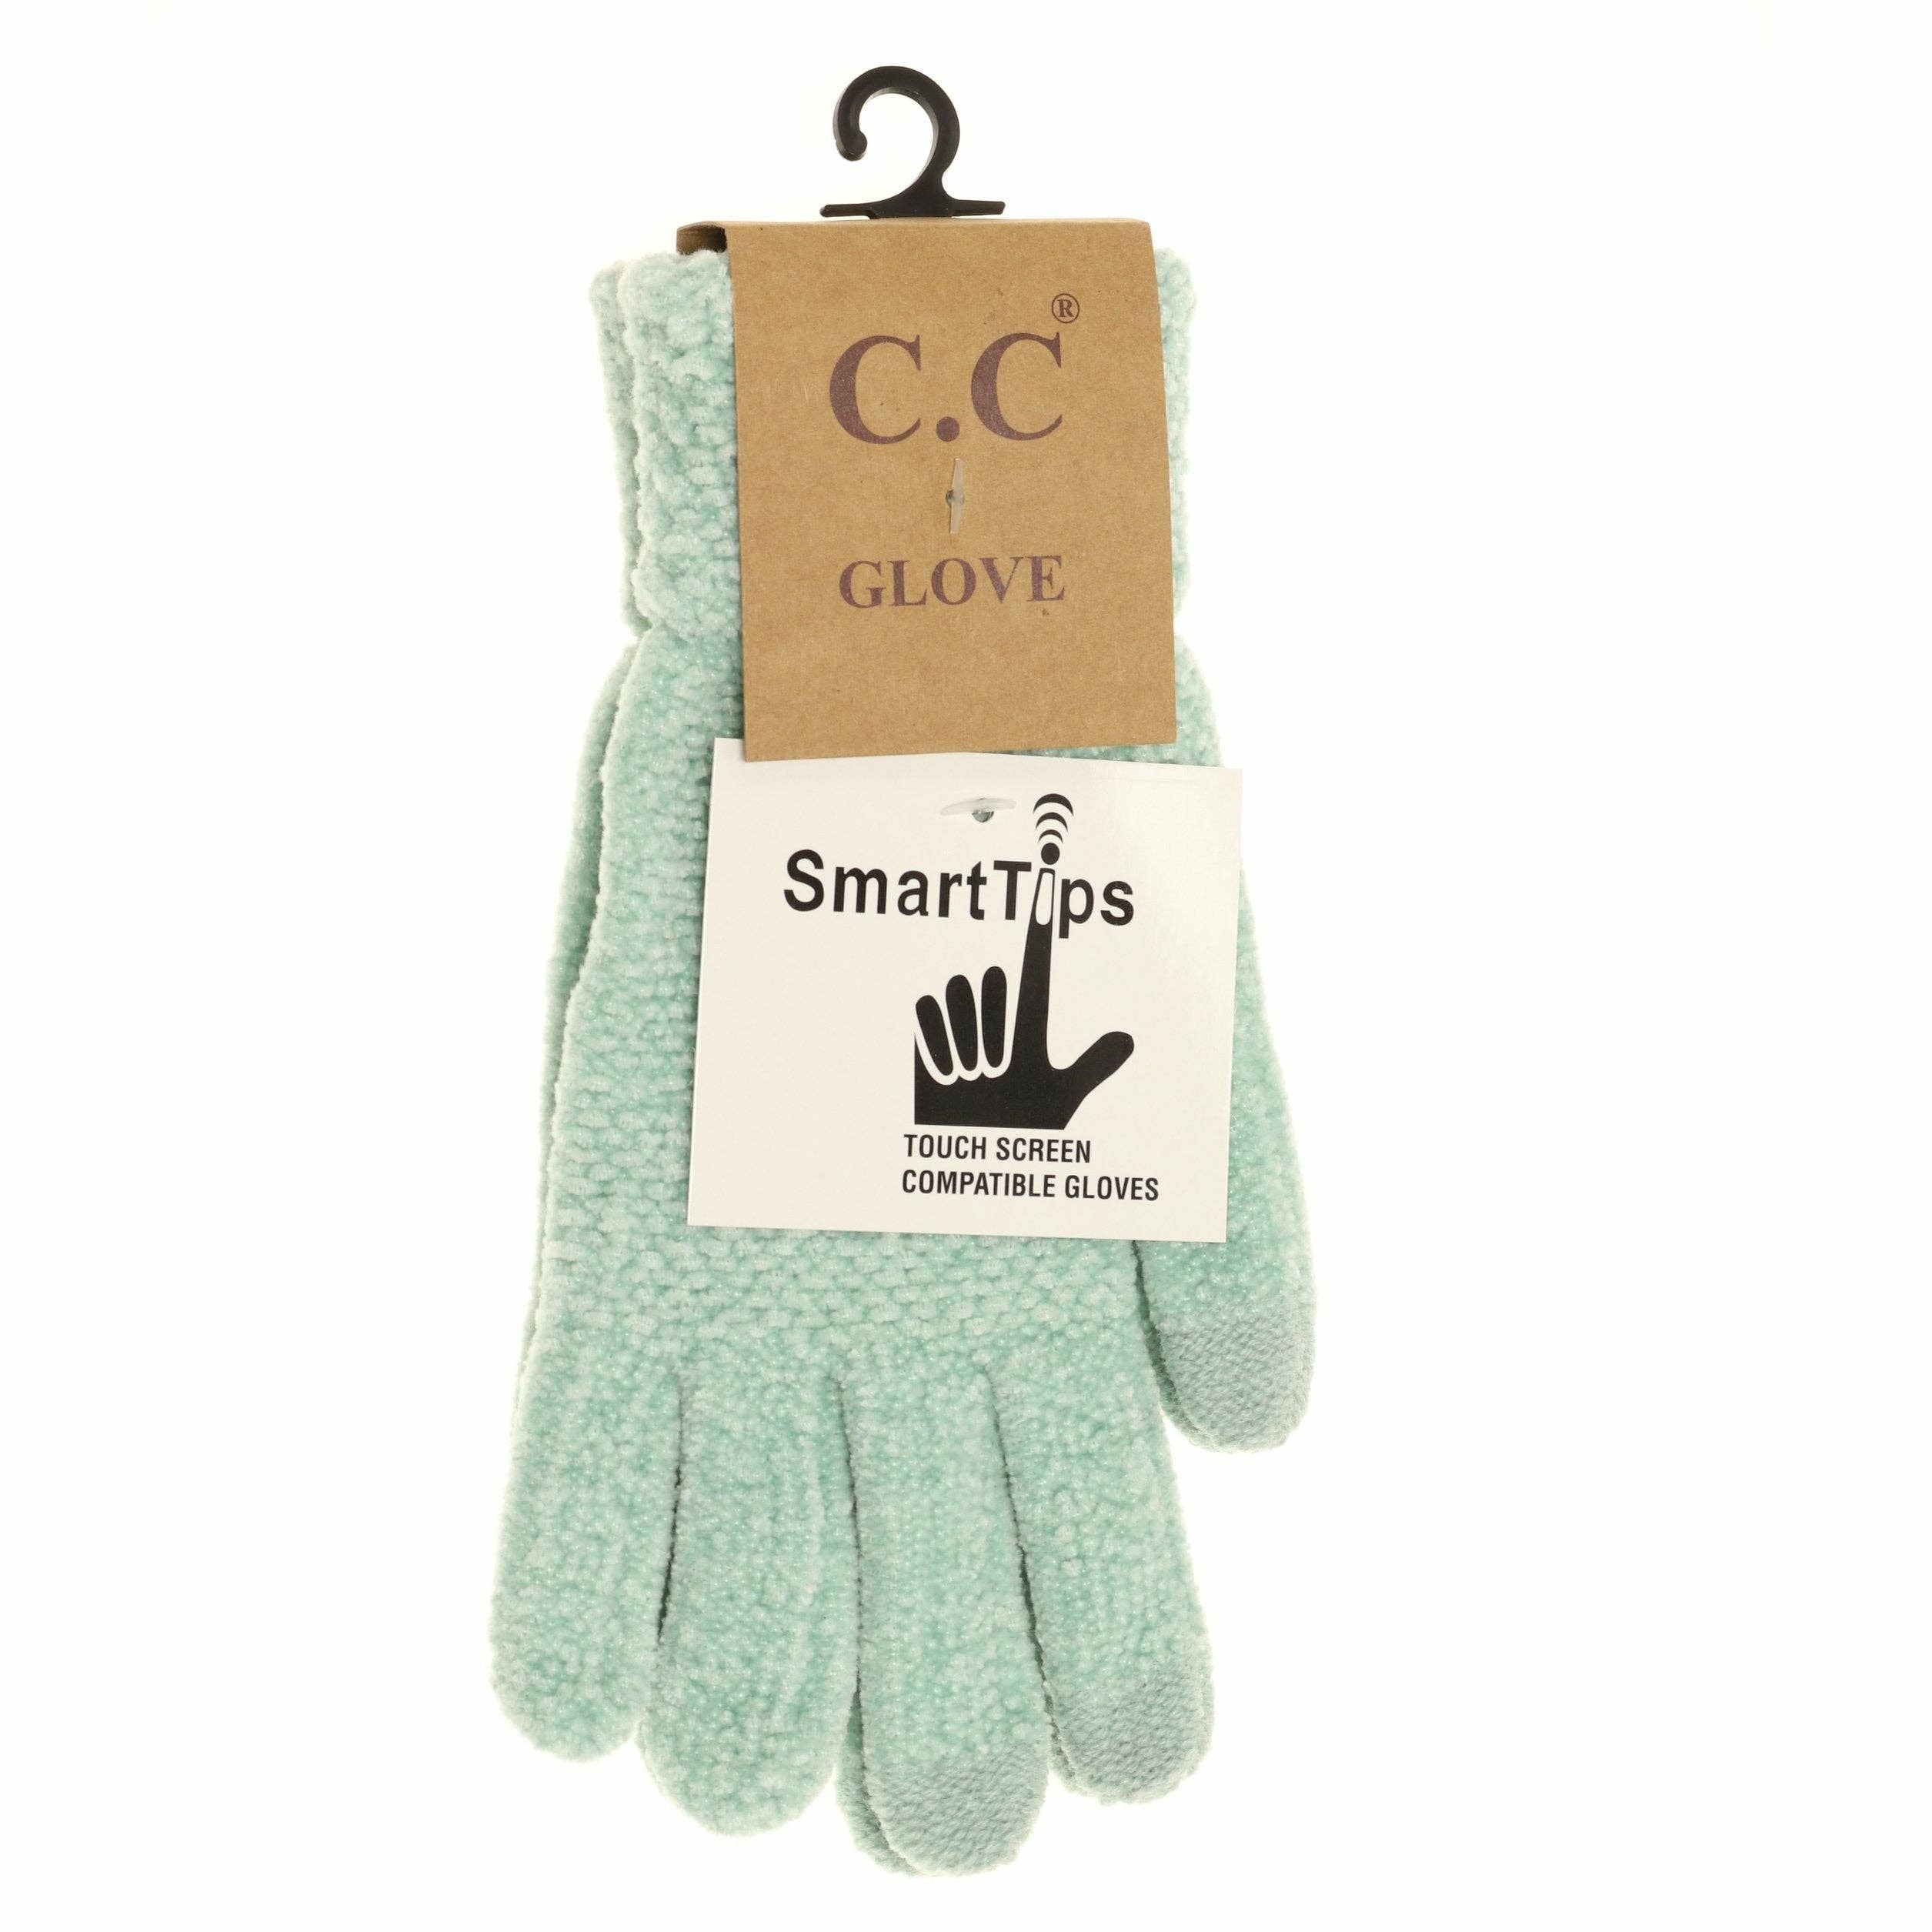 Chenille Gloves G9016: Beige